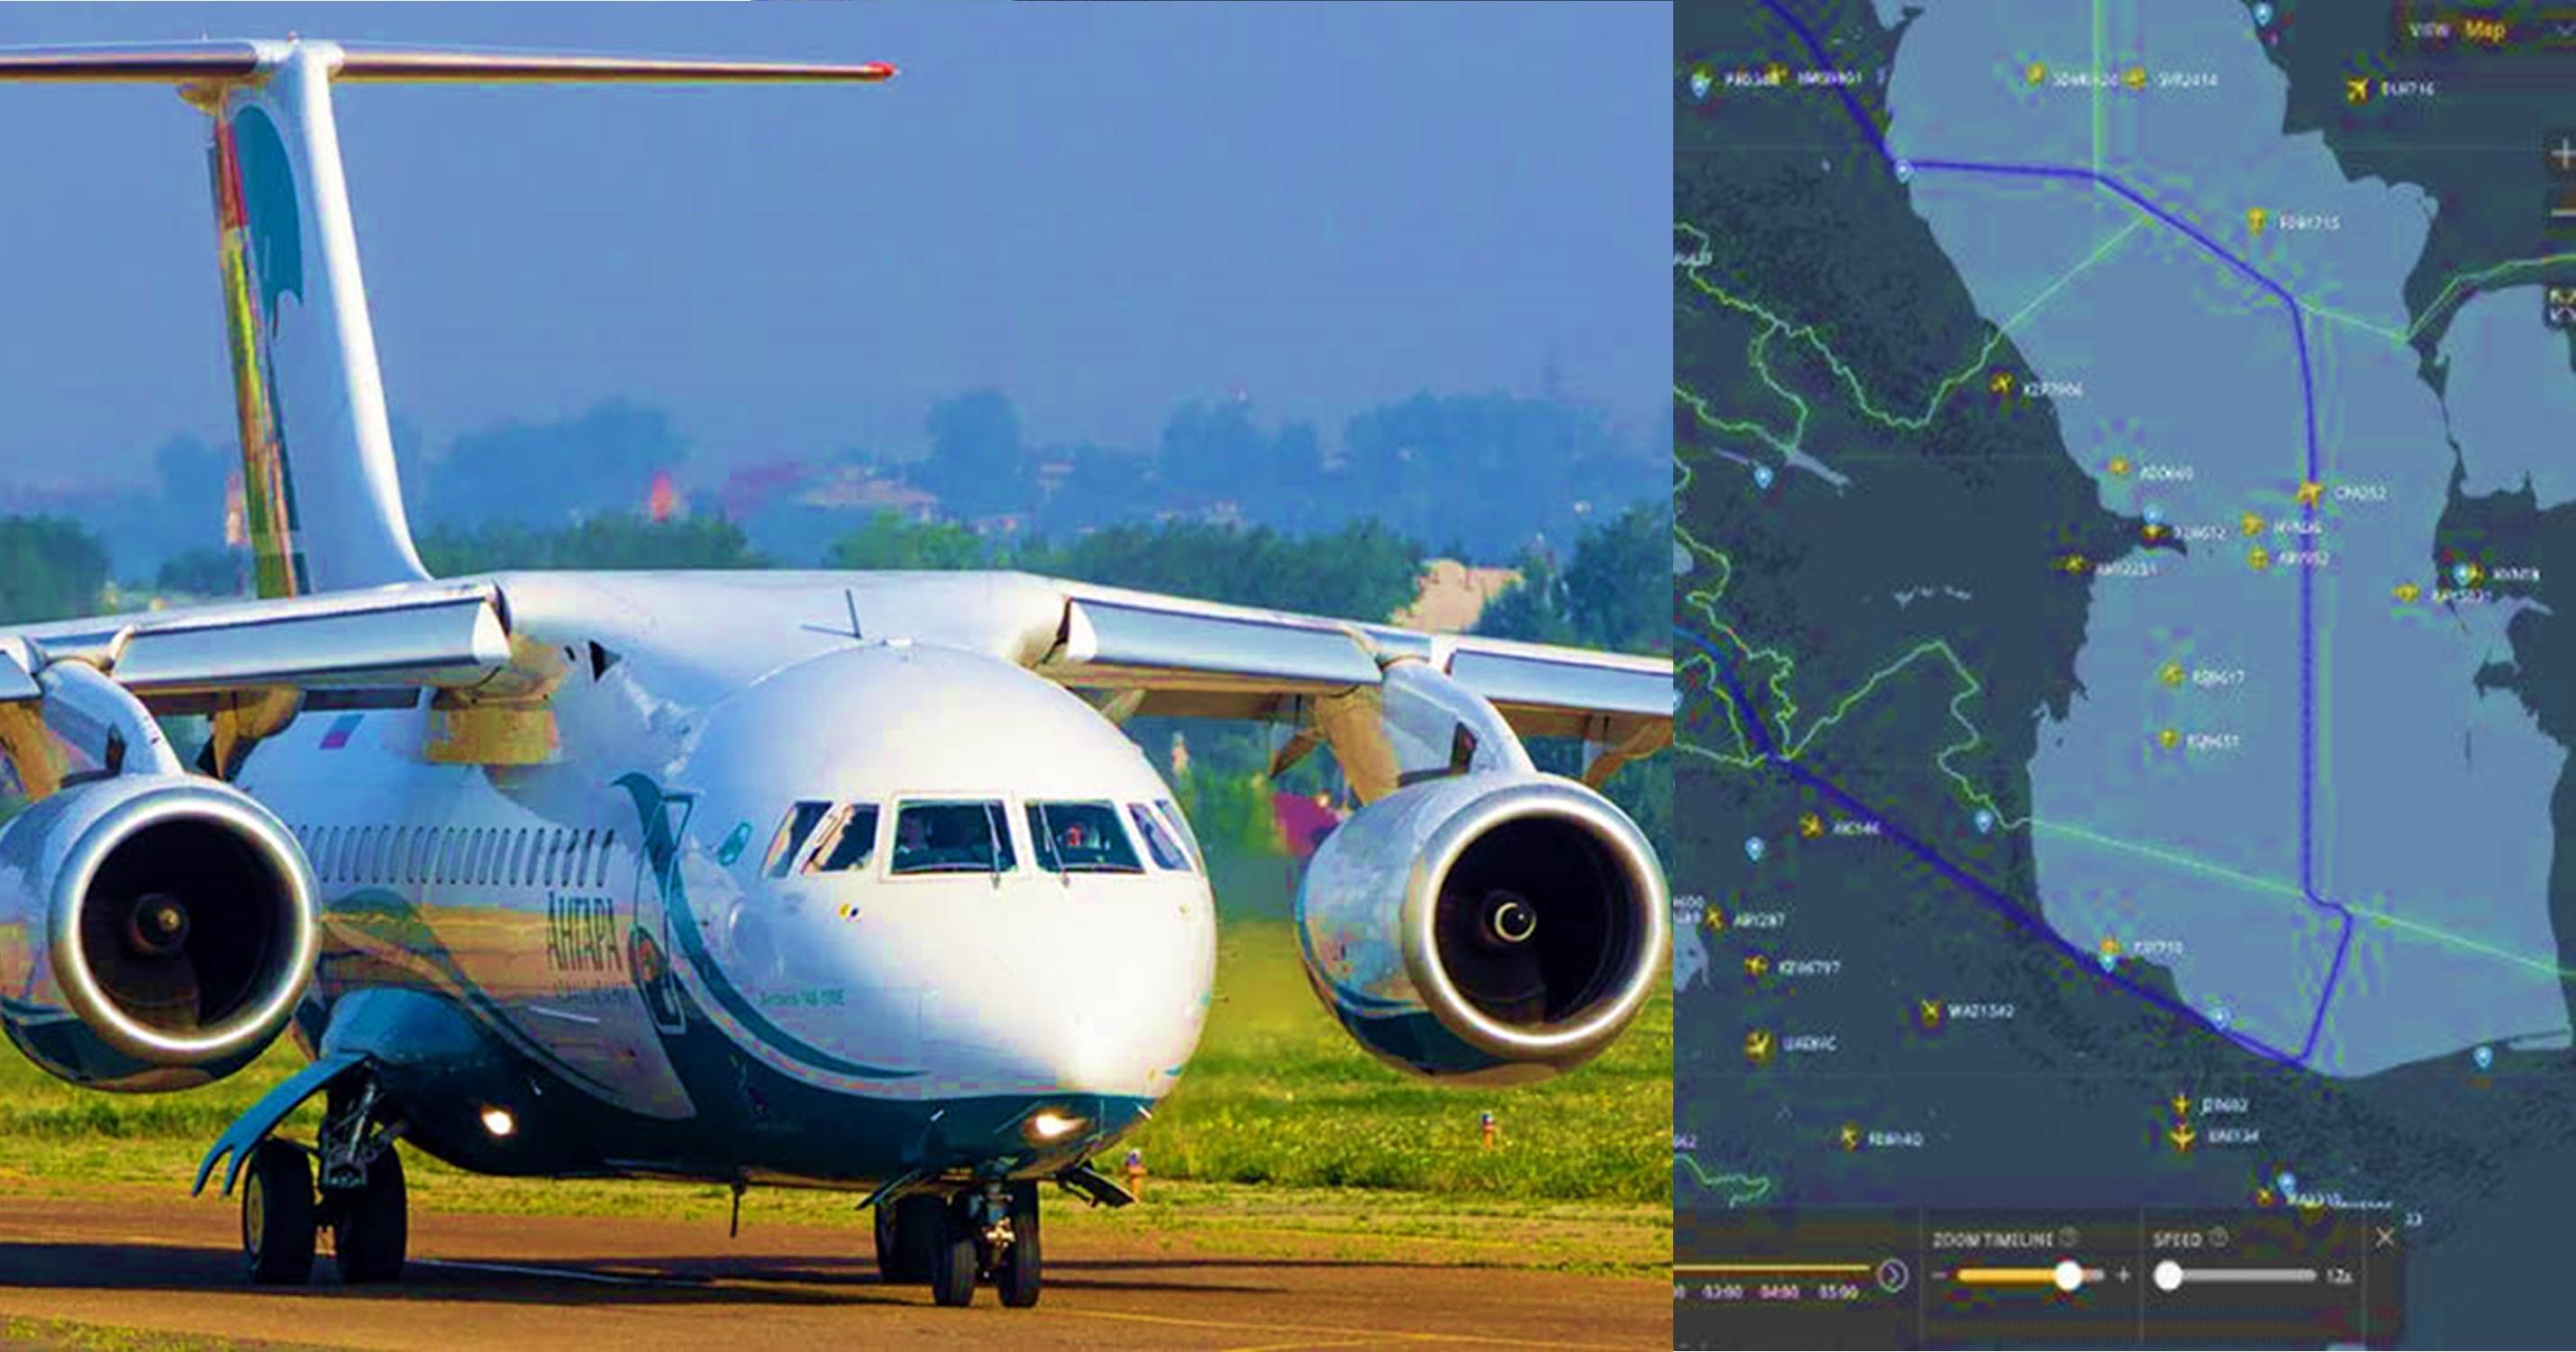 Ադրբեջանը թույլ չի տվել Արցախի համար հումանիտար օգնություն տեղափոխող ռուսական ինքնաթիռը թռչի իր օդային տարածքով